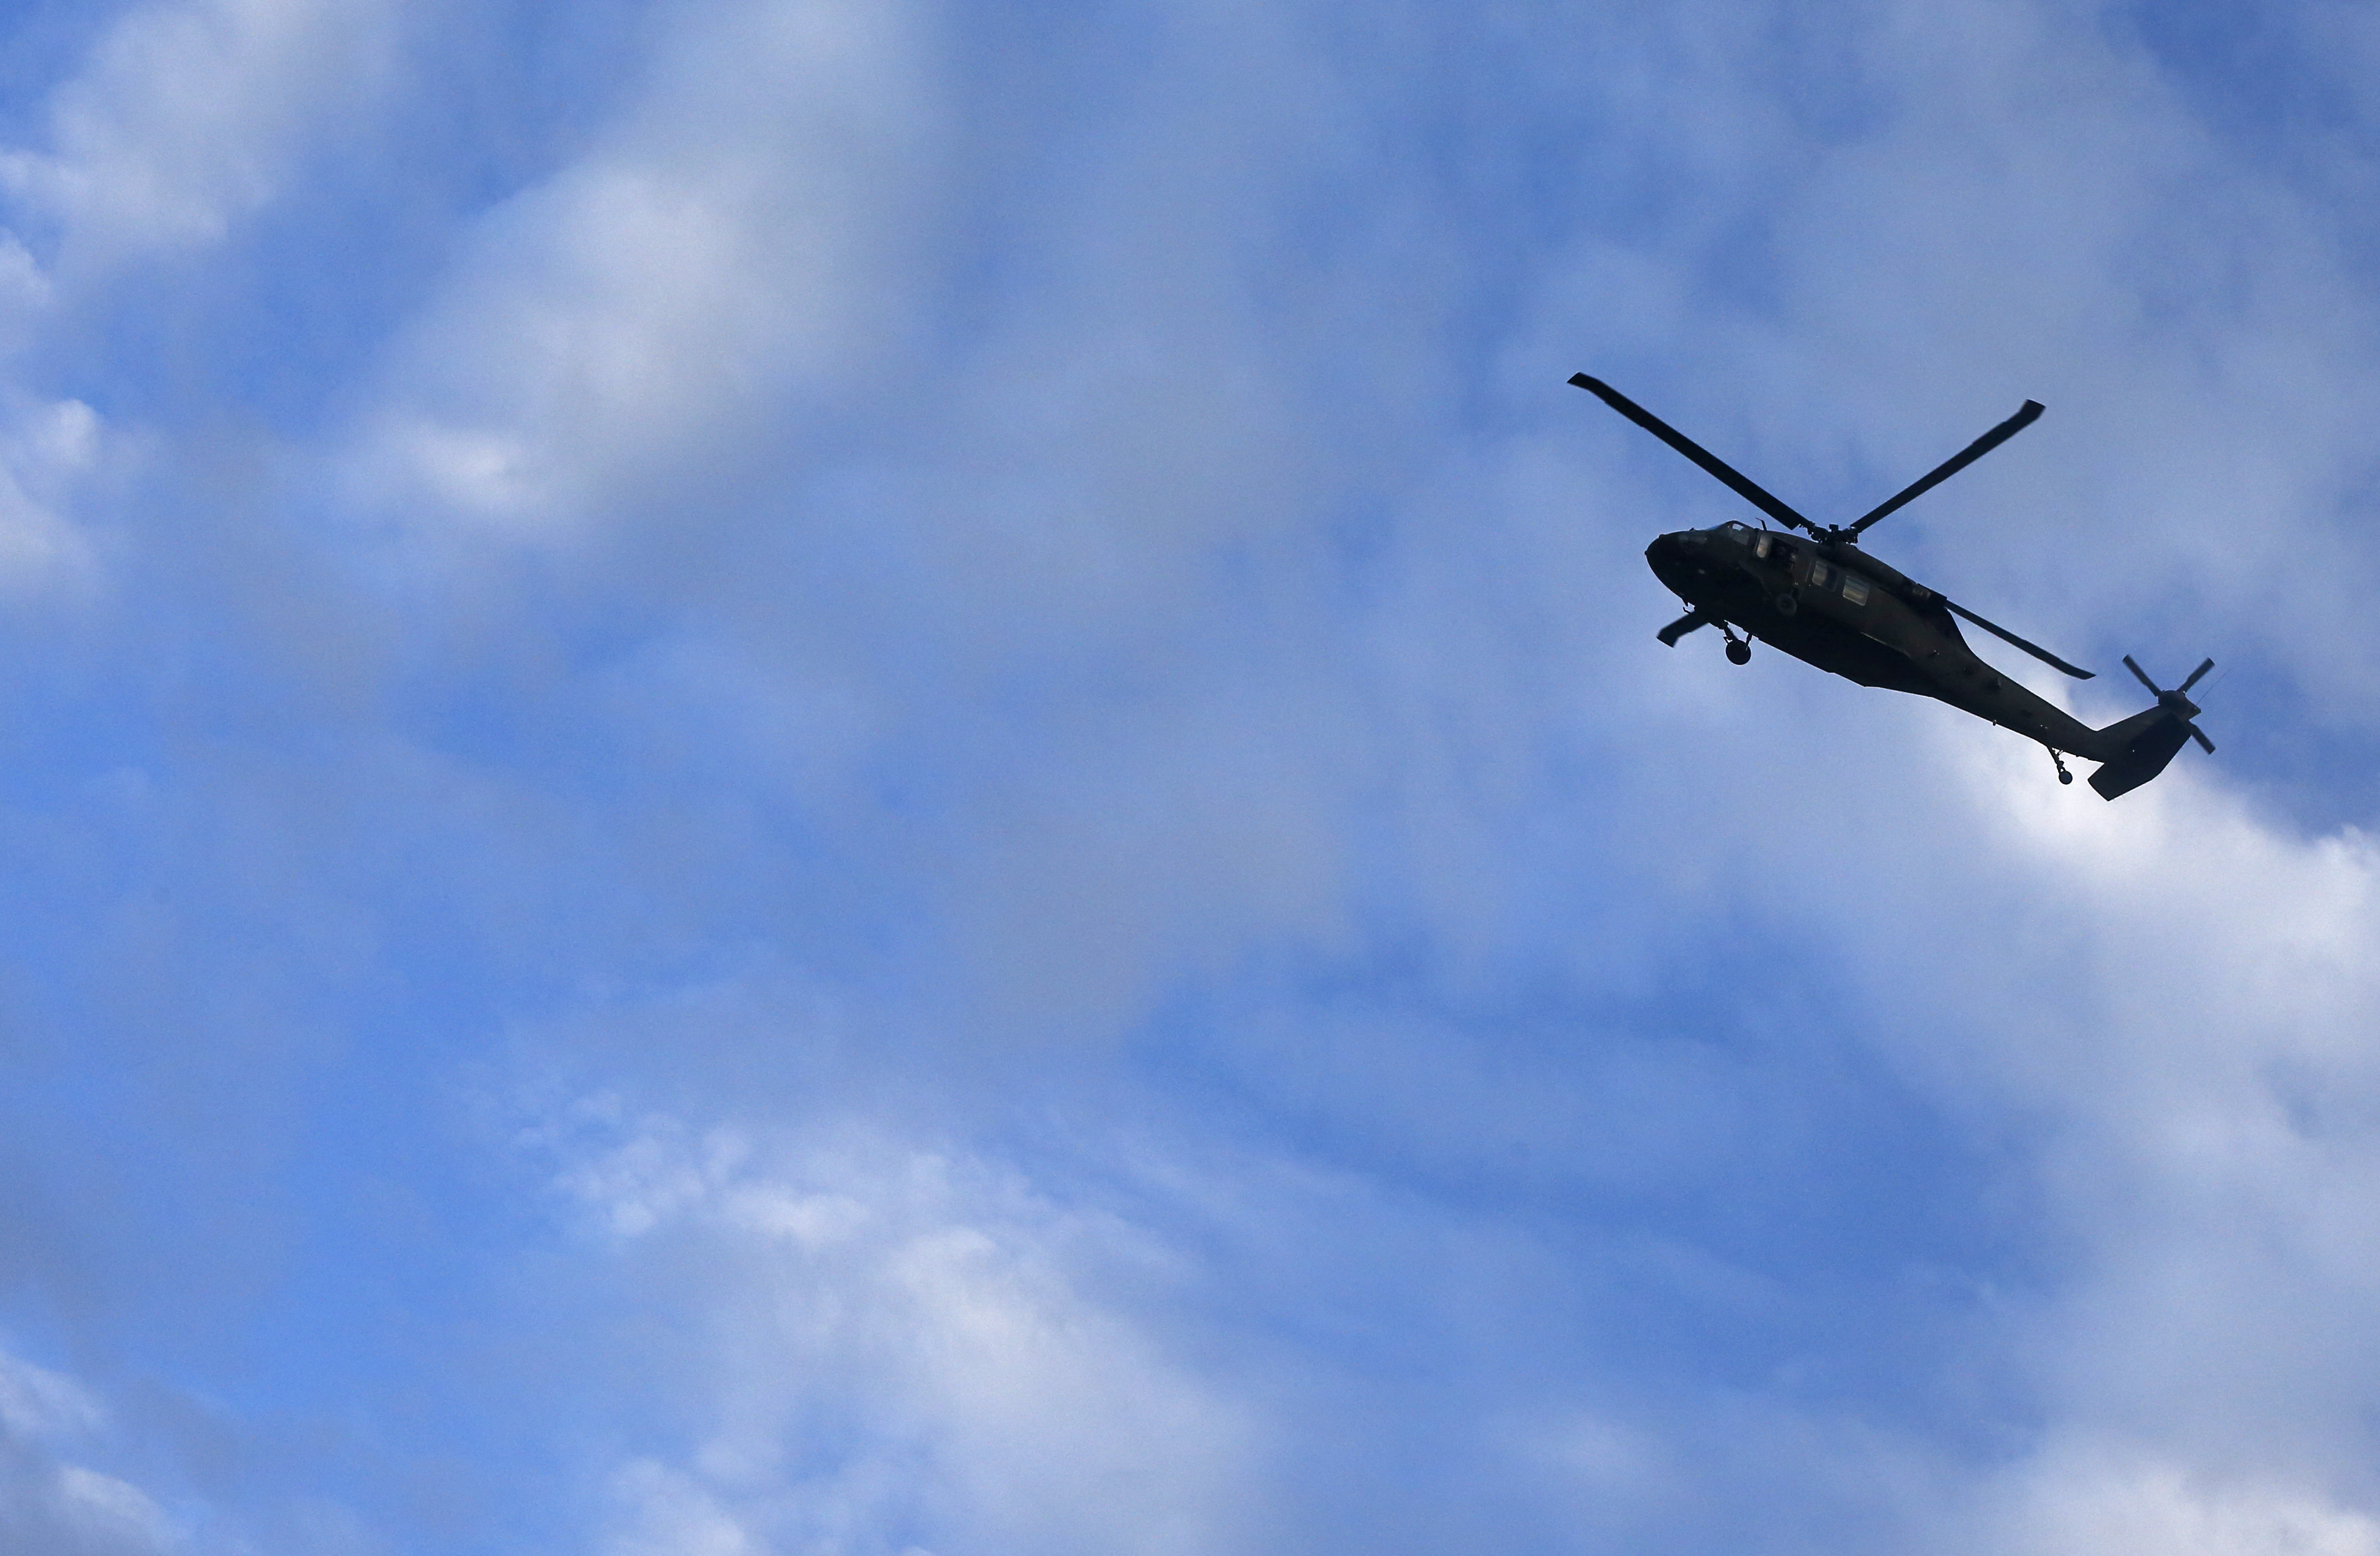 Écrasement d'un hélicoptère : la Défense nationale confirme la mort des  deux militaires